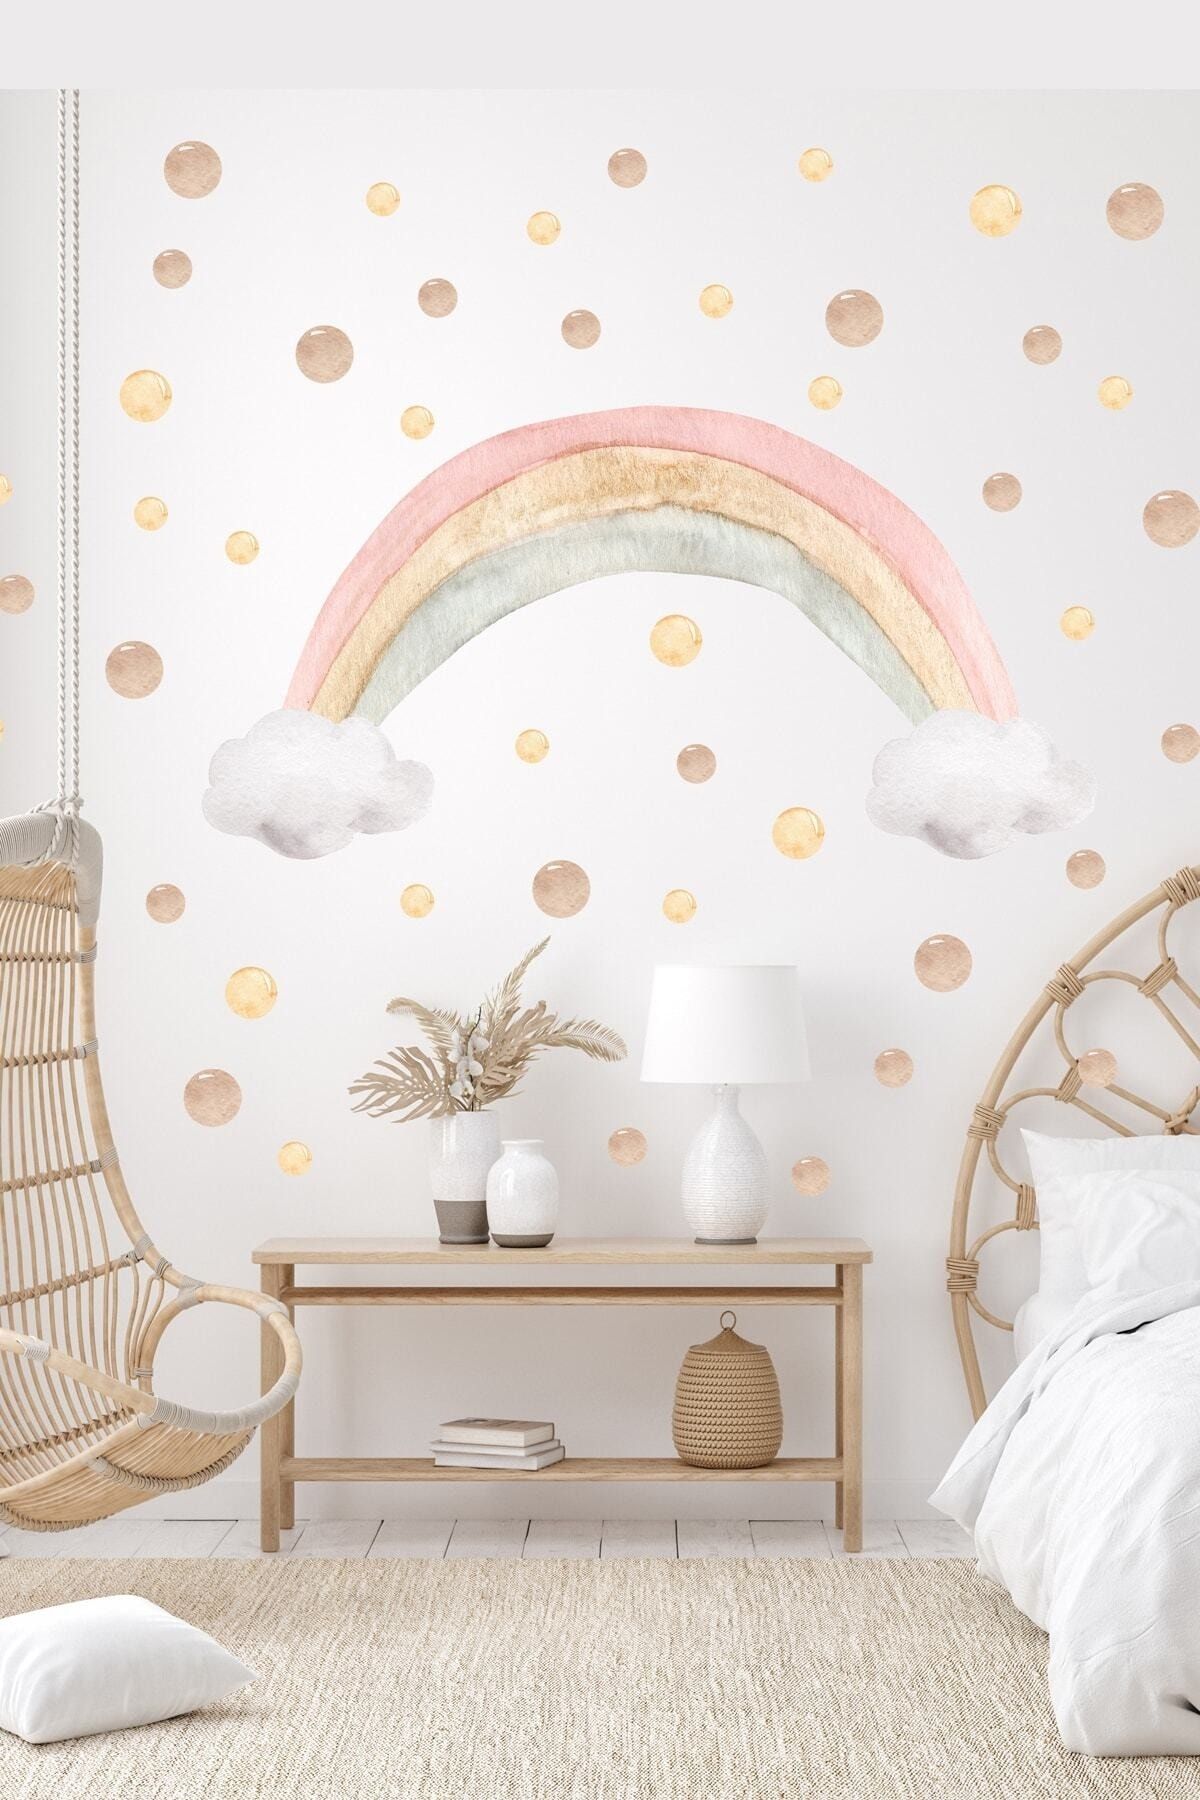 Sim Tasarım Soft Renk Gökkuşağı Ve Kahverengi Tonlarda Puantiyeler Çocuk Odası Duvar Sticker Seti